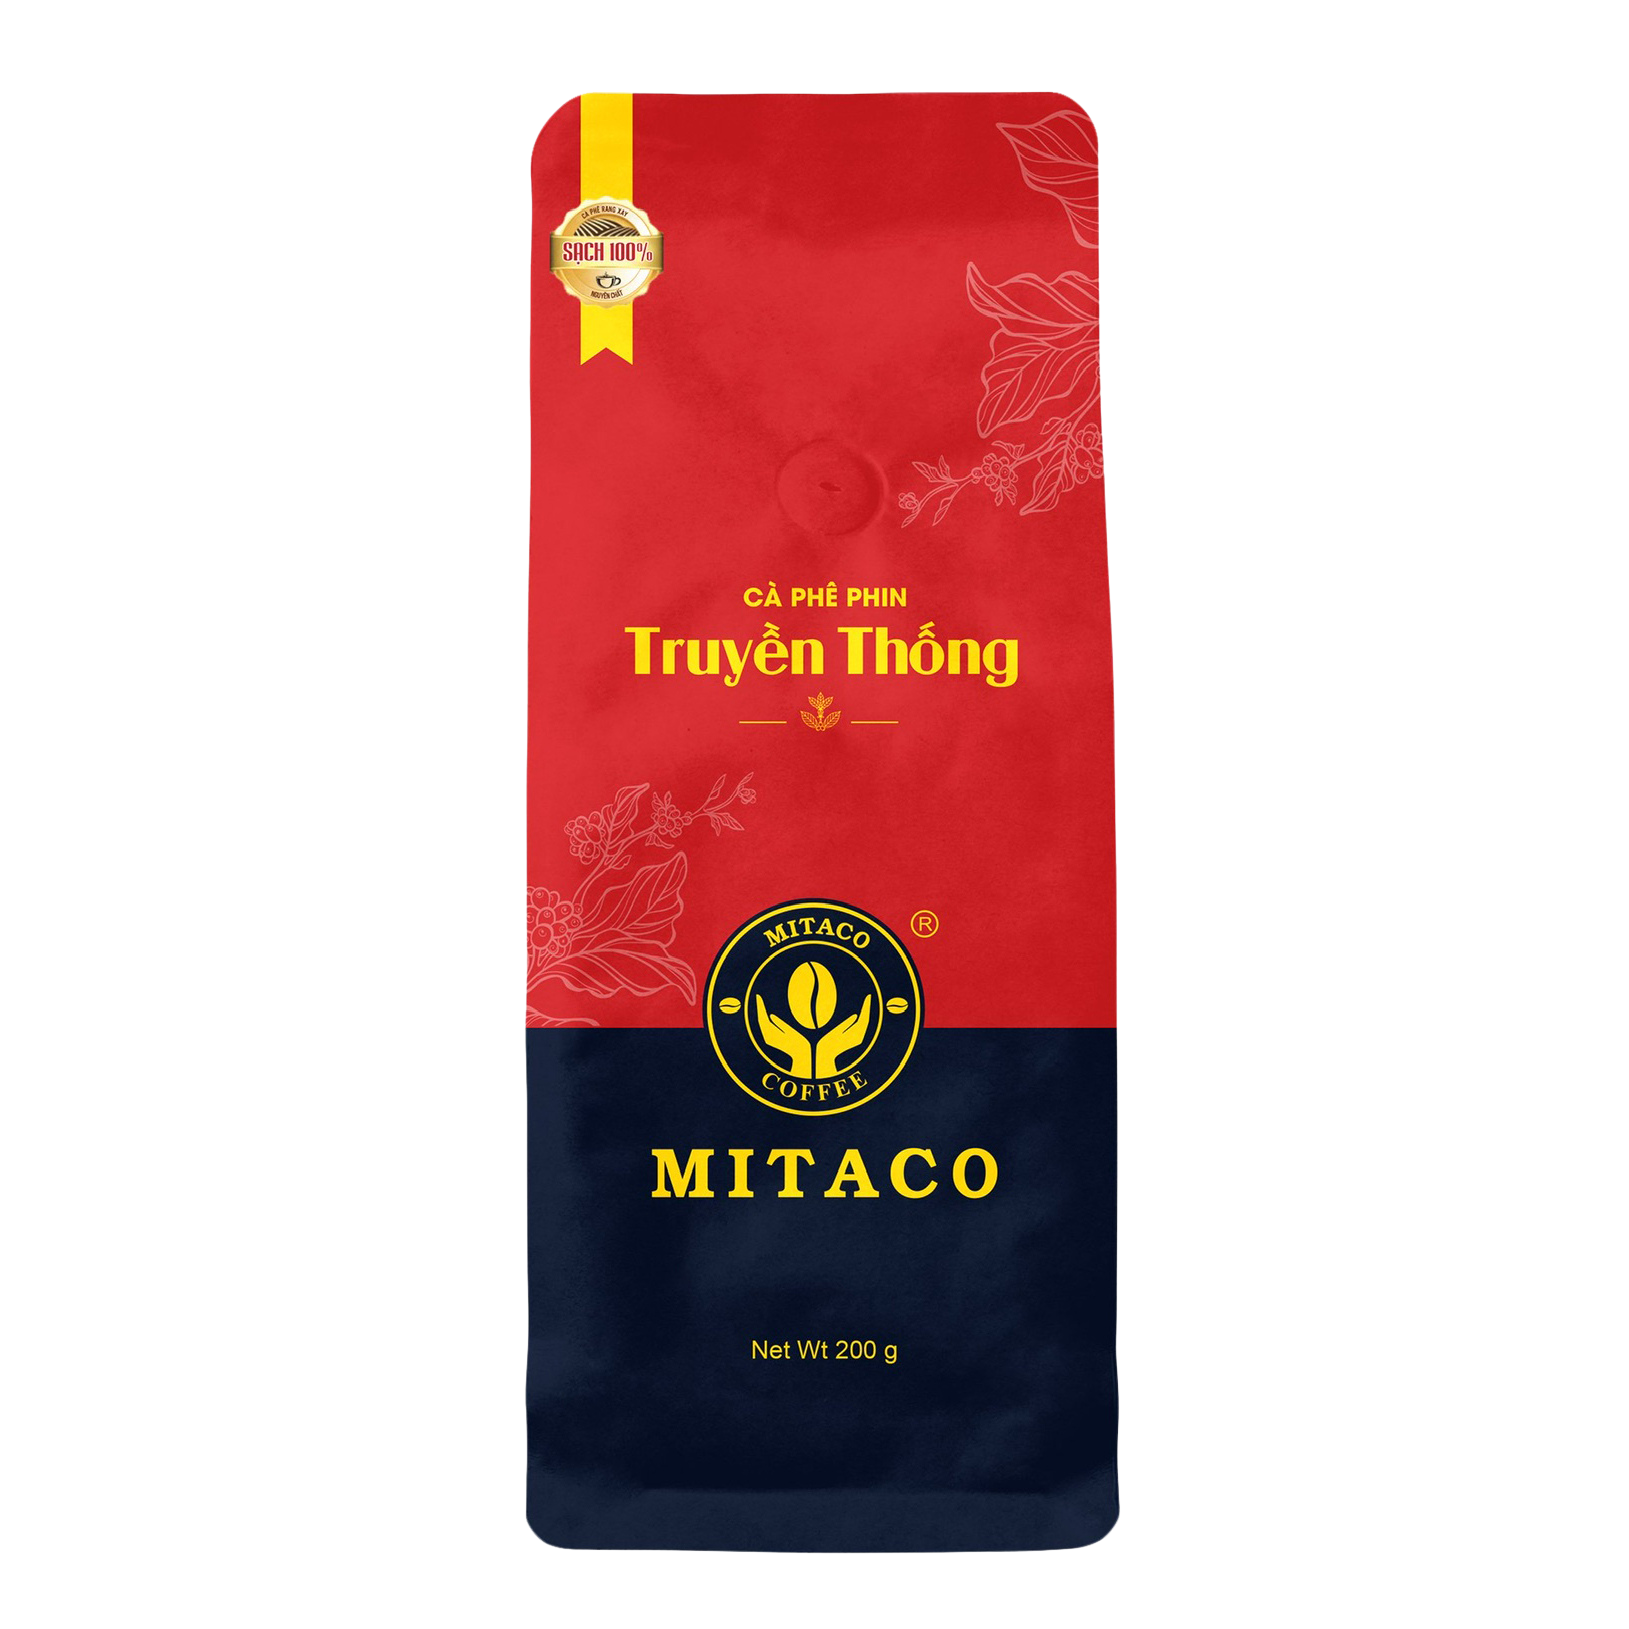 Cà phê phin nguyên chất Truyền Thống MITACO COFFEE Gói 200g